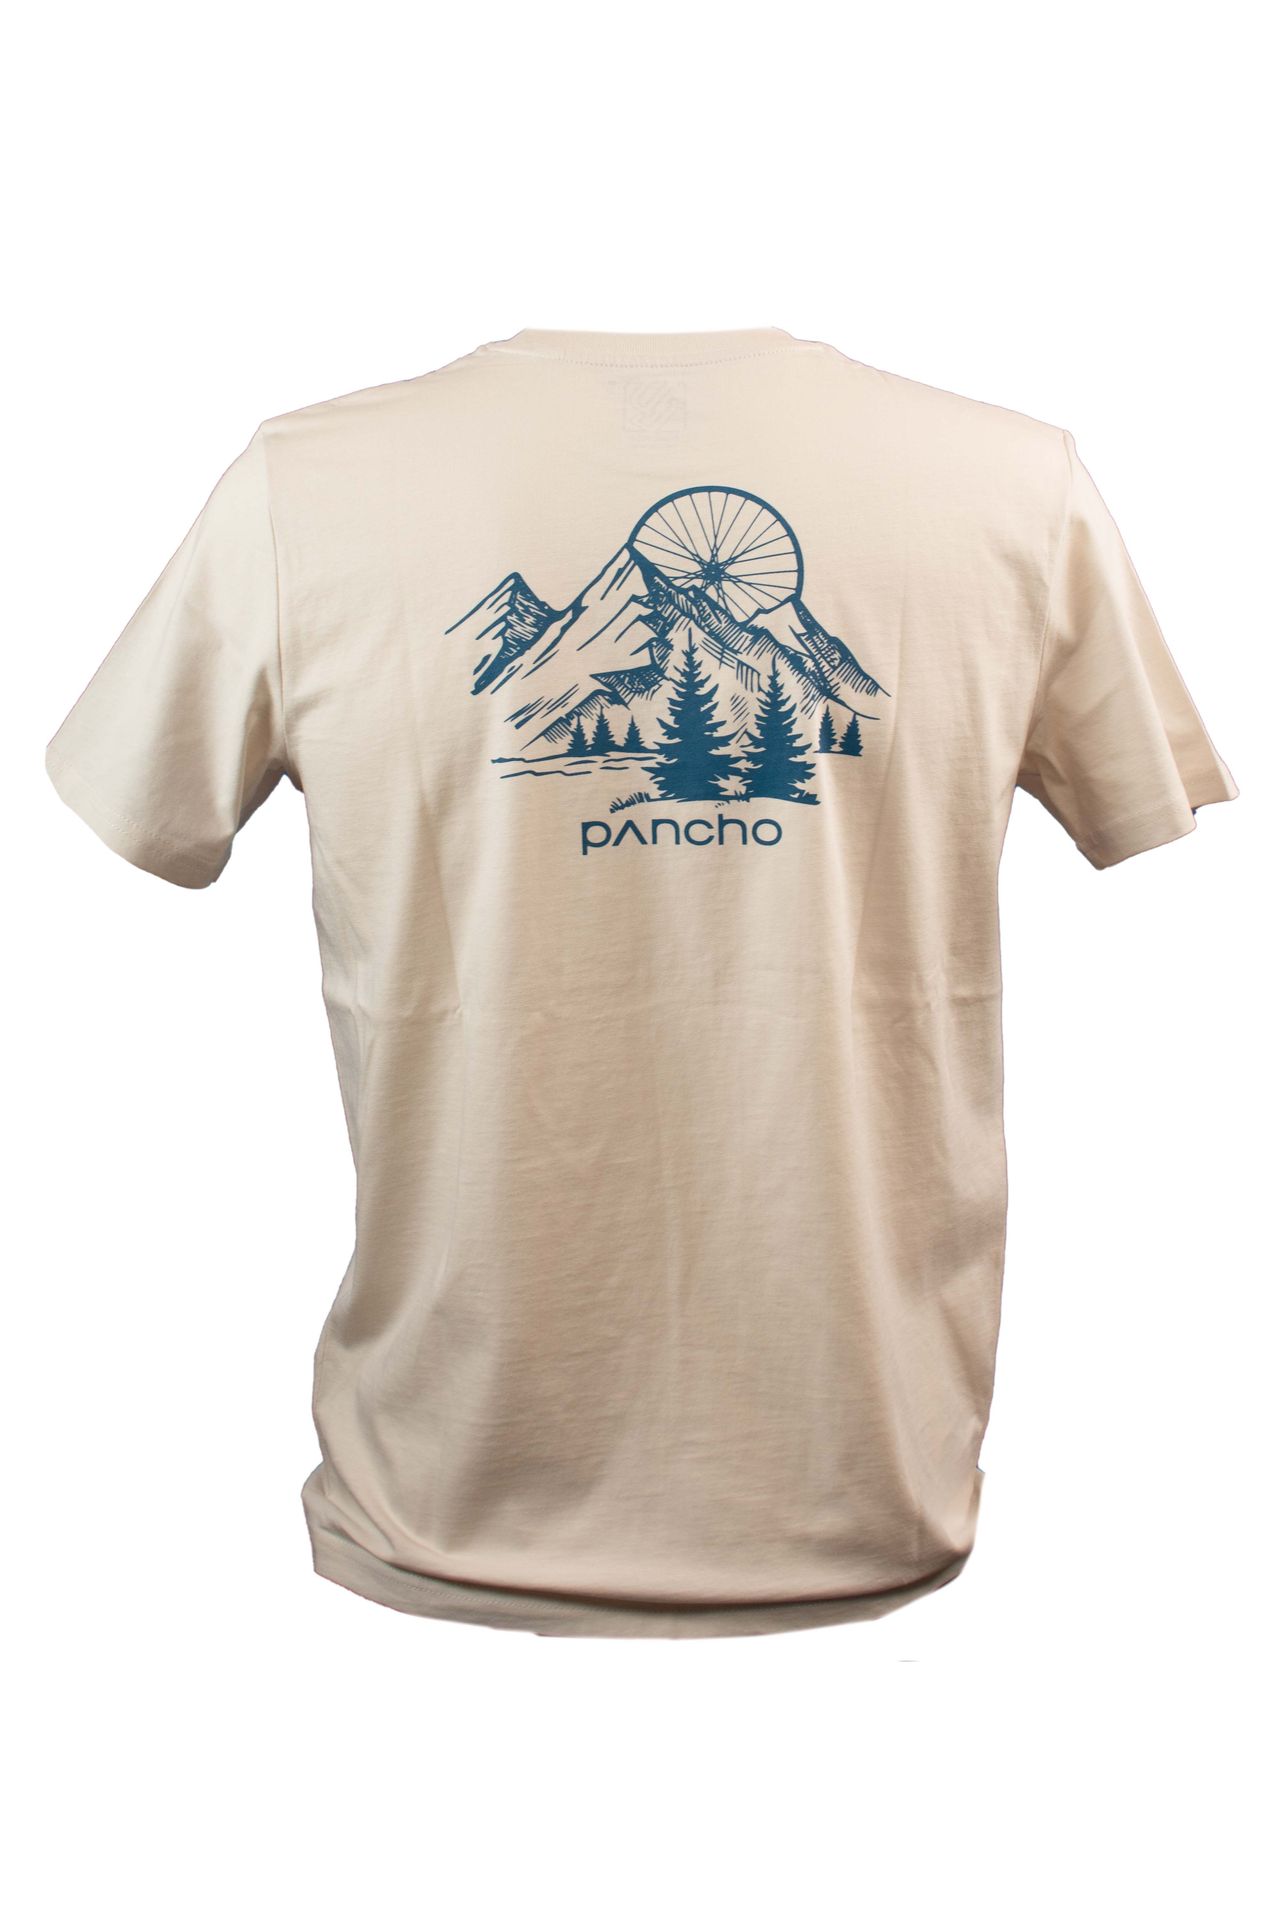 Panchowheels x Dirt Love T-Shirt "Surf the Trail", creme